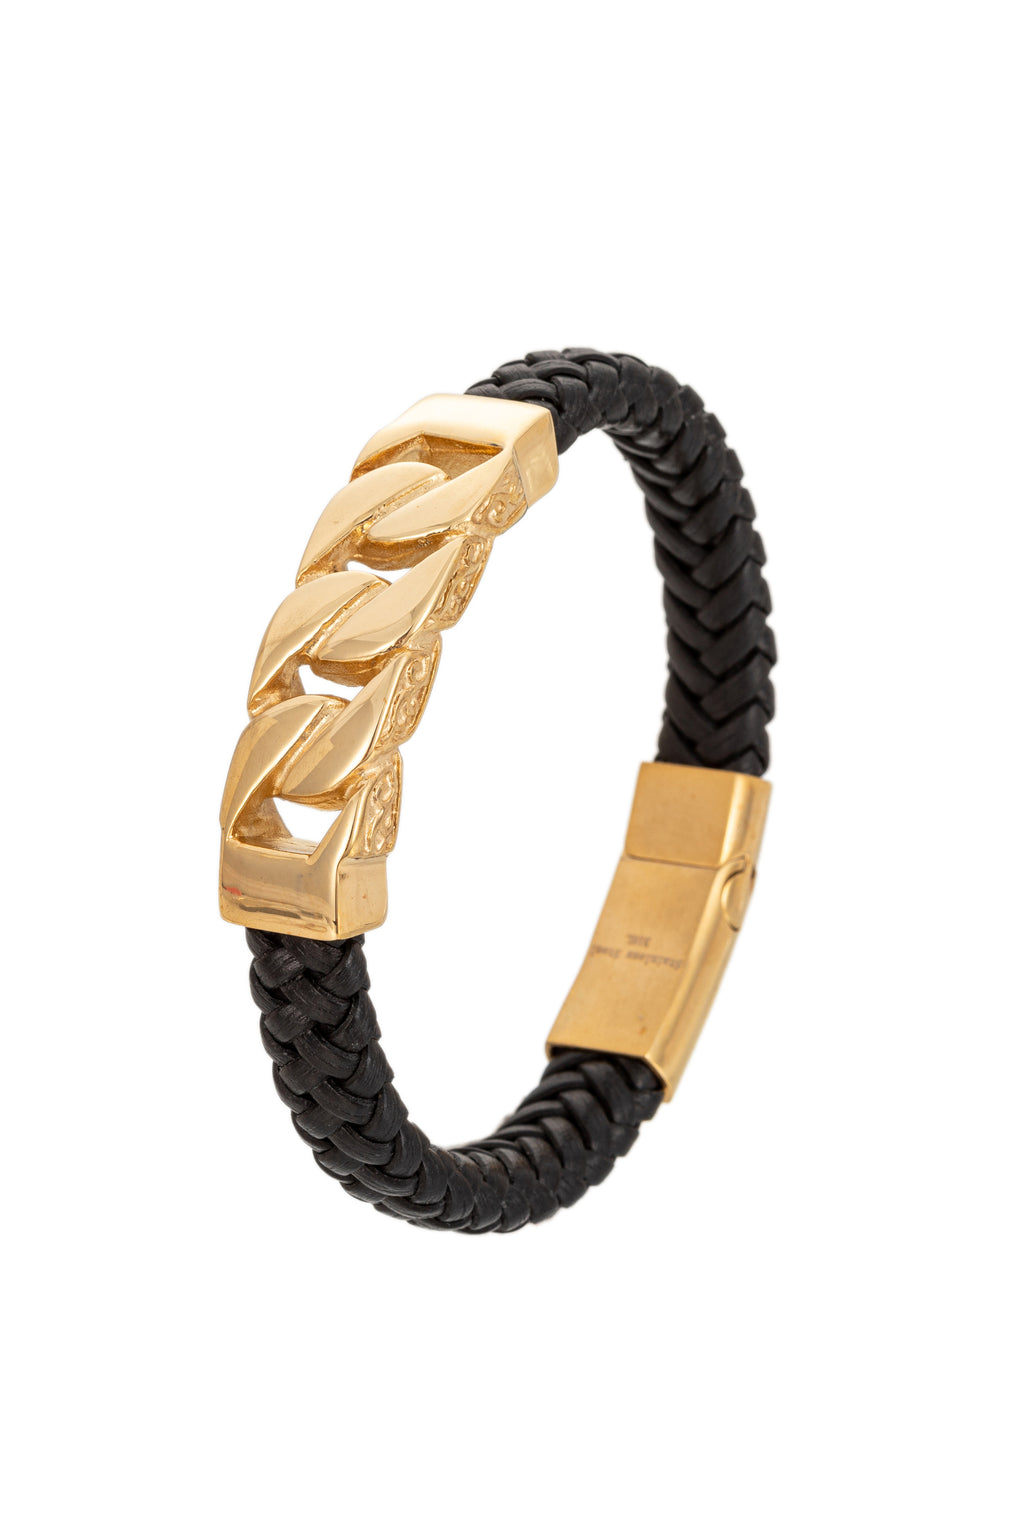 Gold Cuban link titanium bracelet with authentic leather.